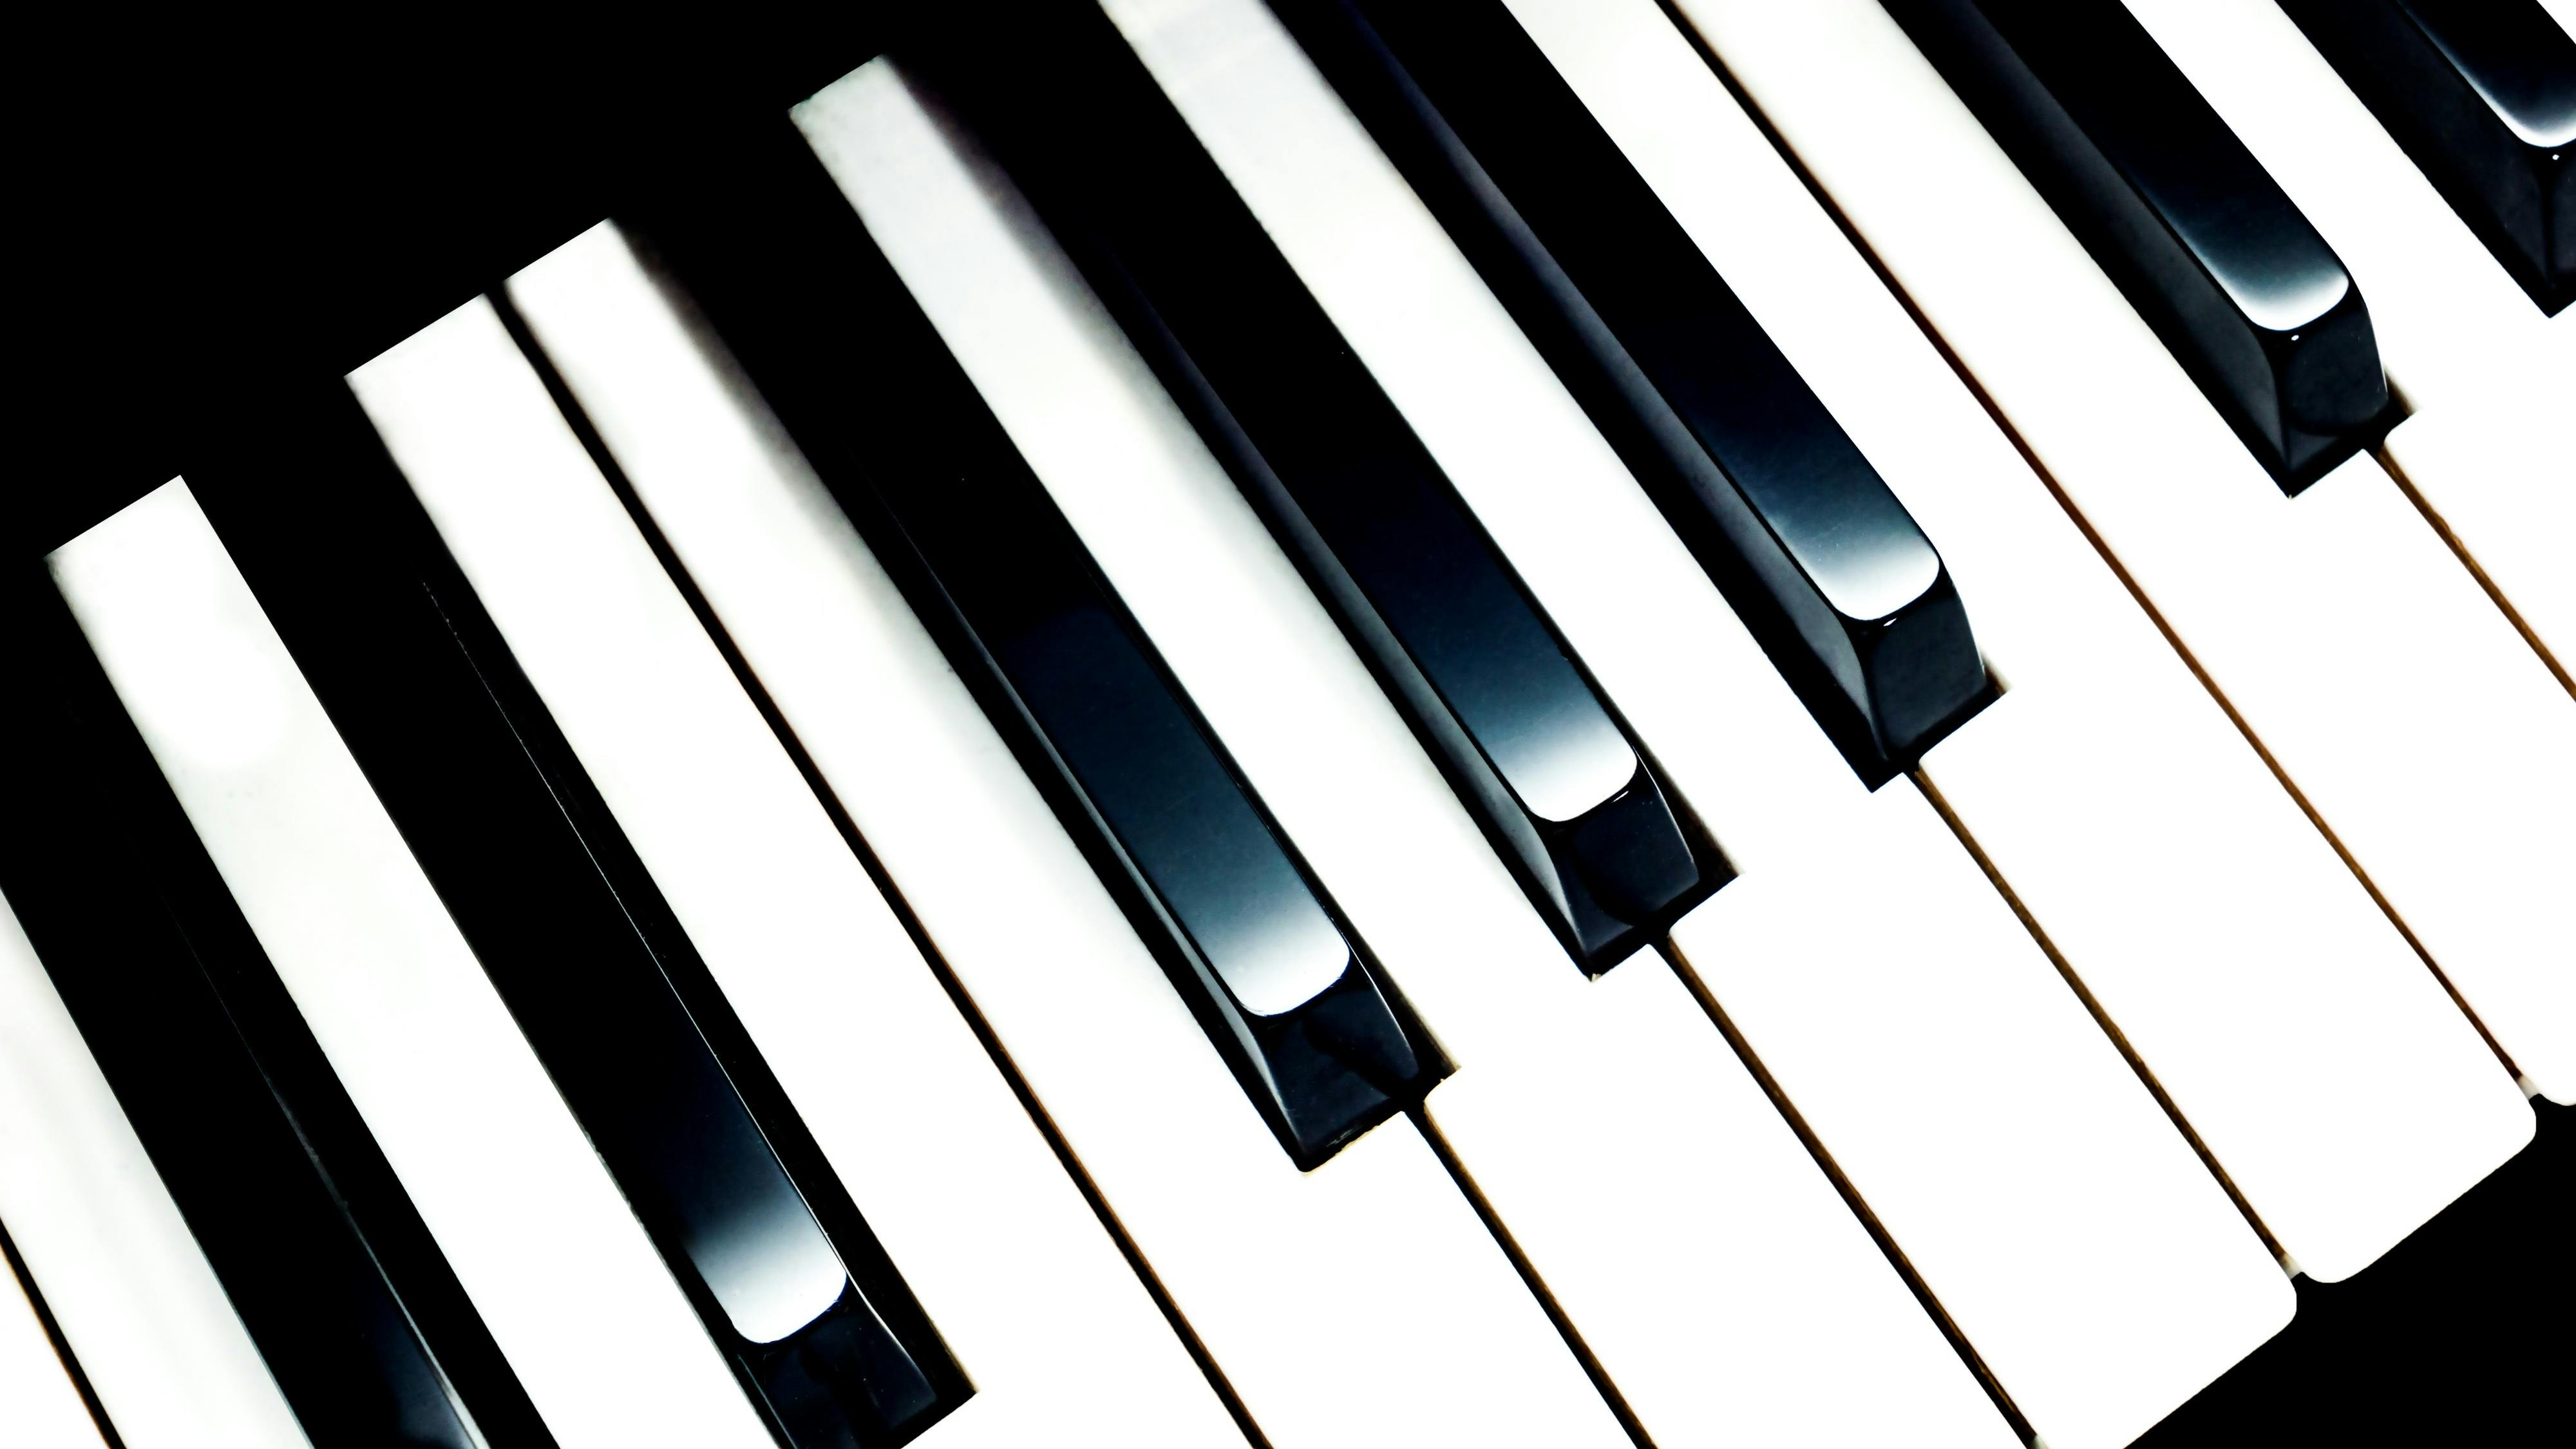 keys on a piano